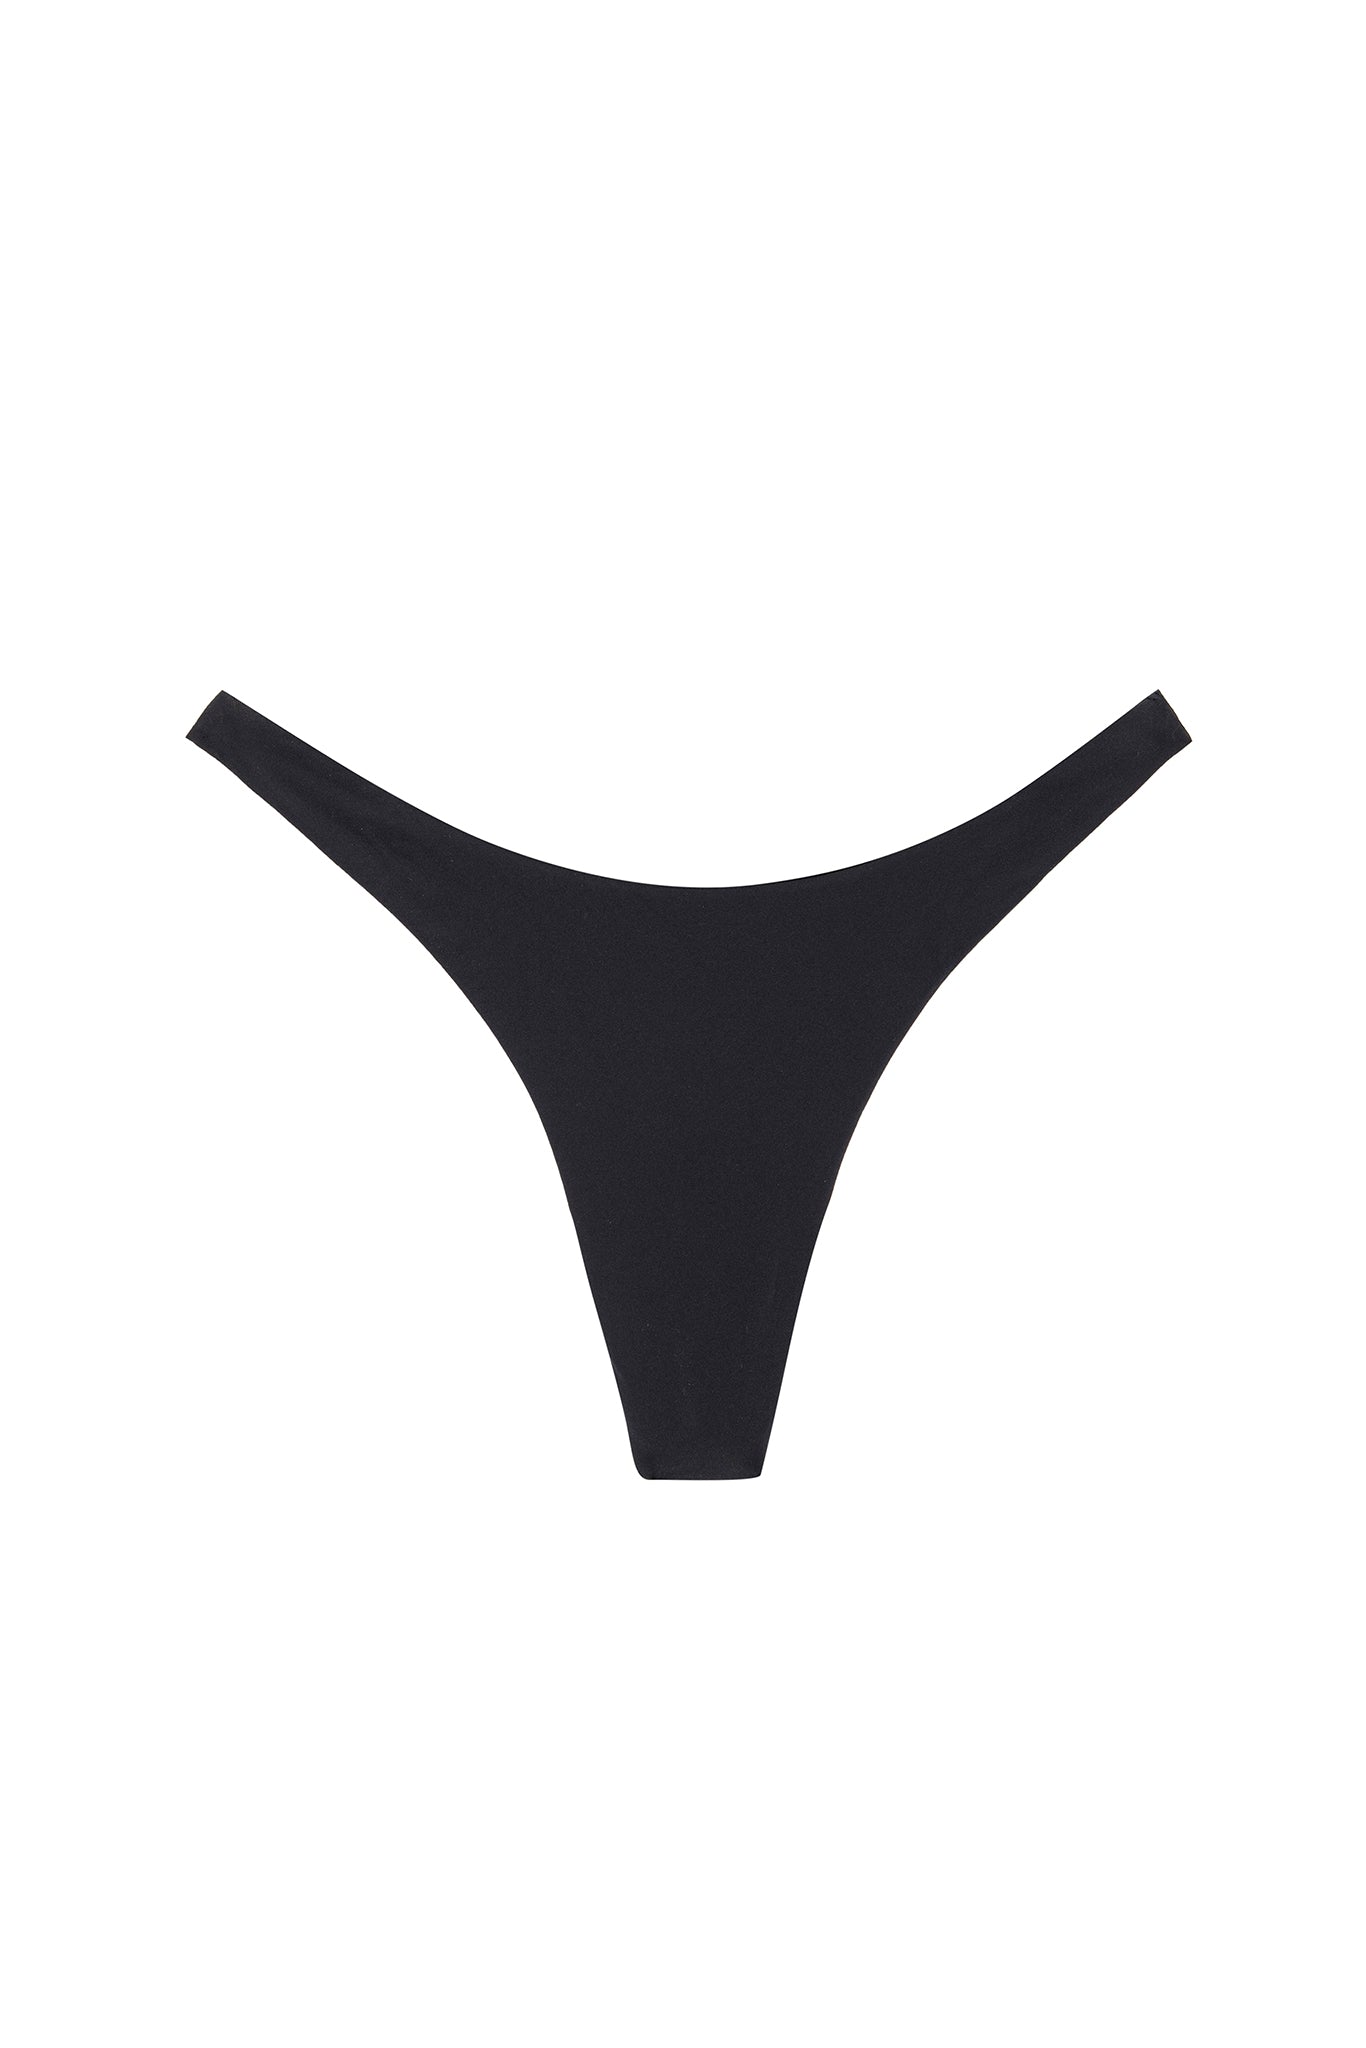 http://mondayswimwear.com/cdn/shop/products/Byron-Thong-Flat.jpg?v=1685545461